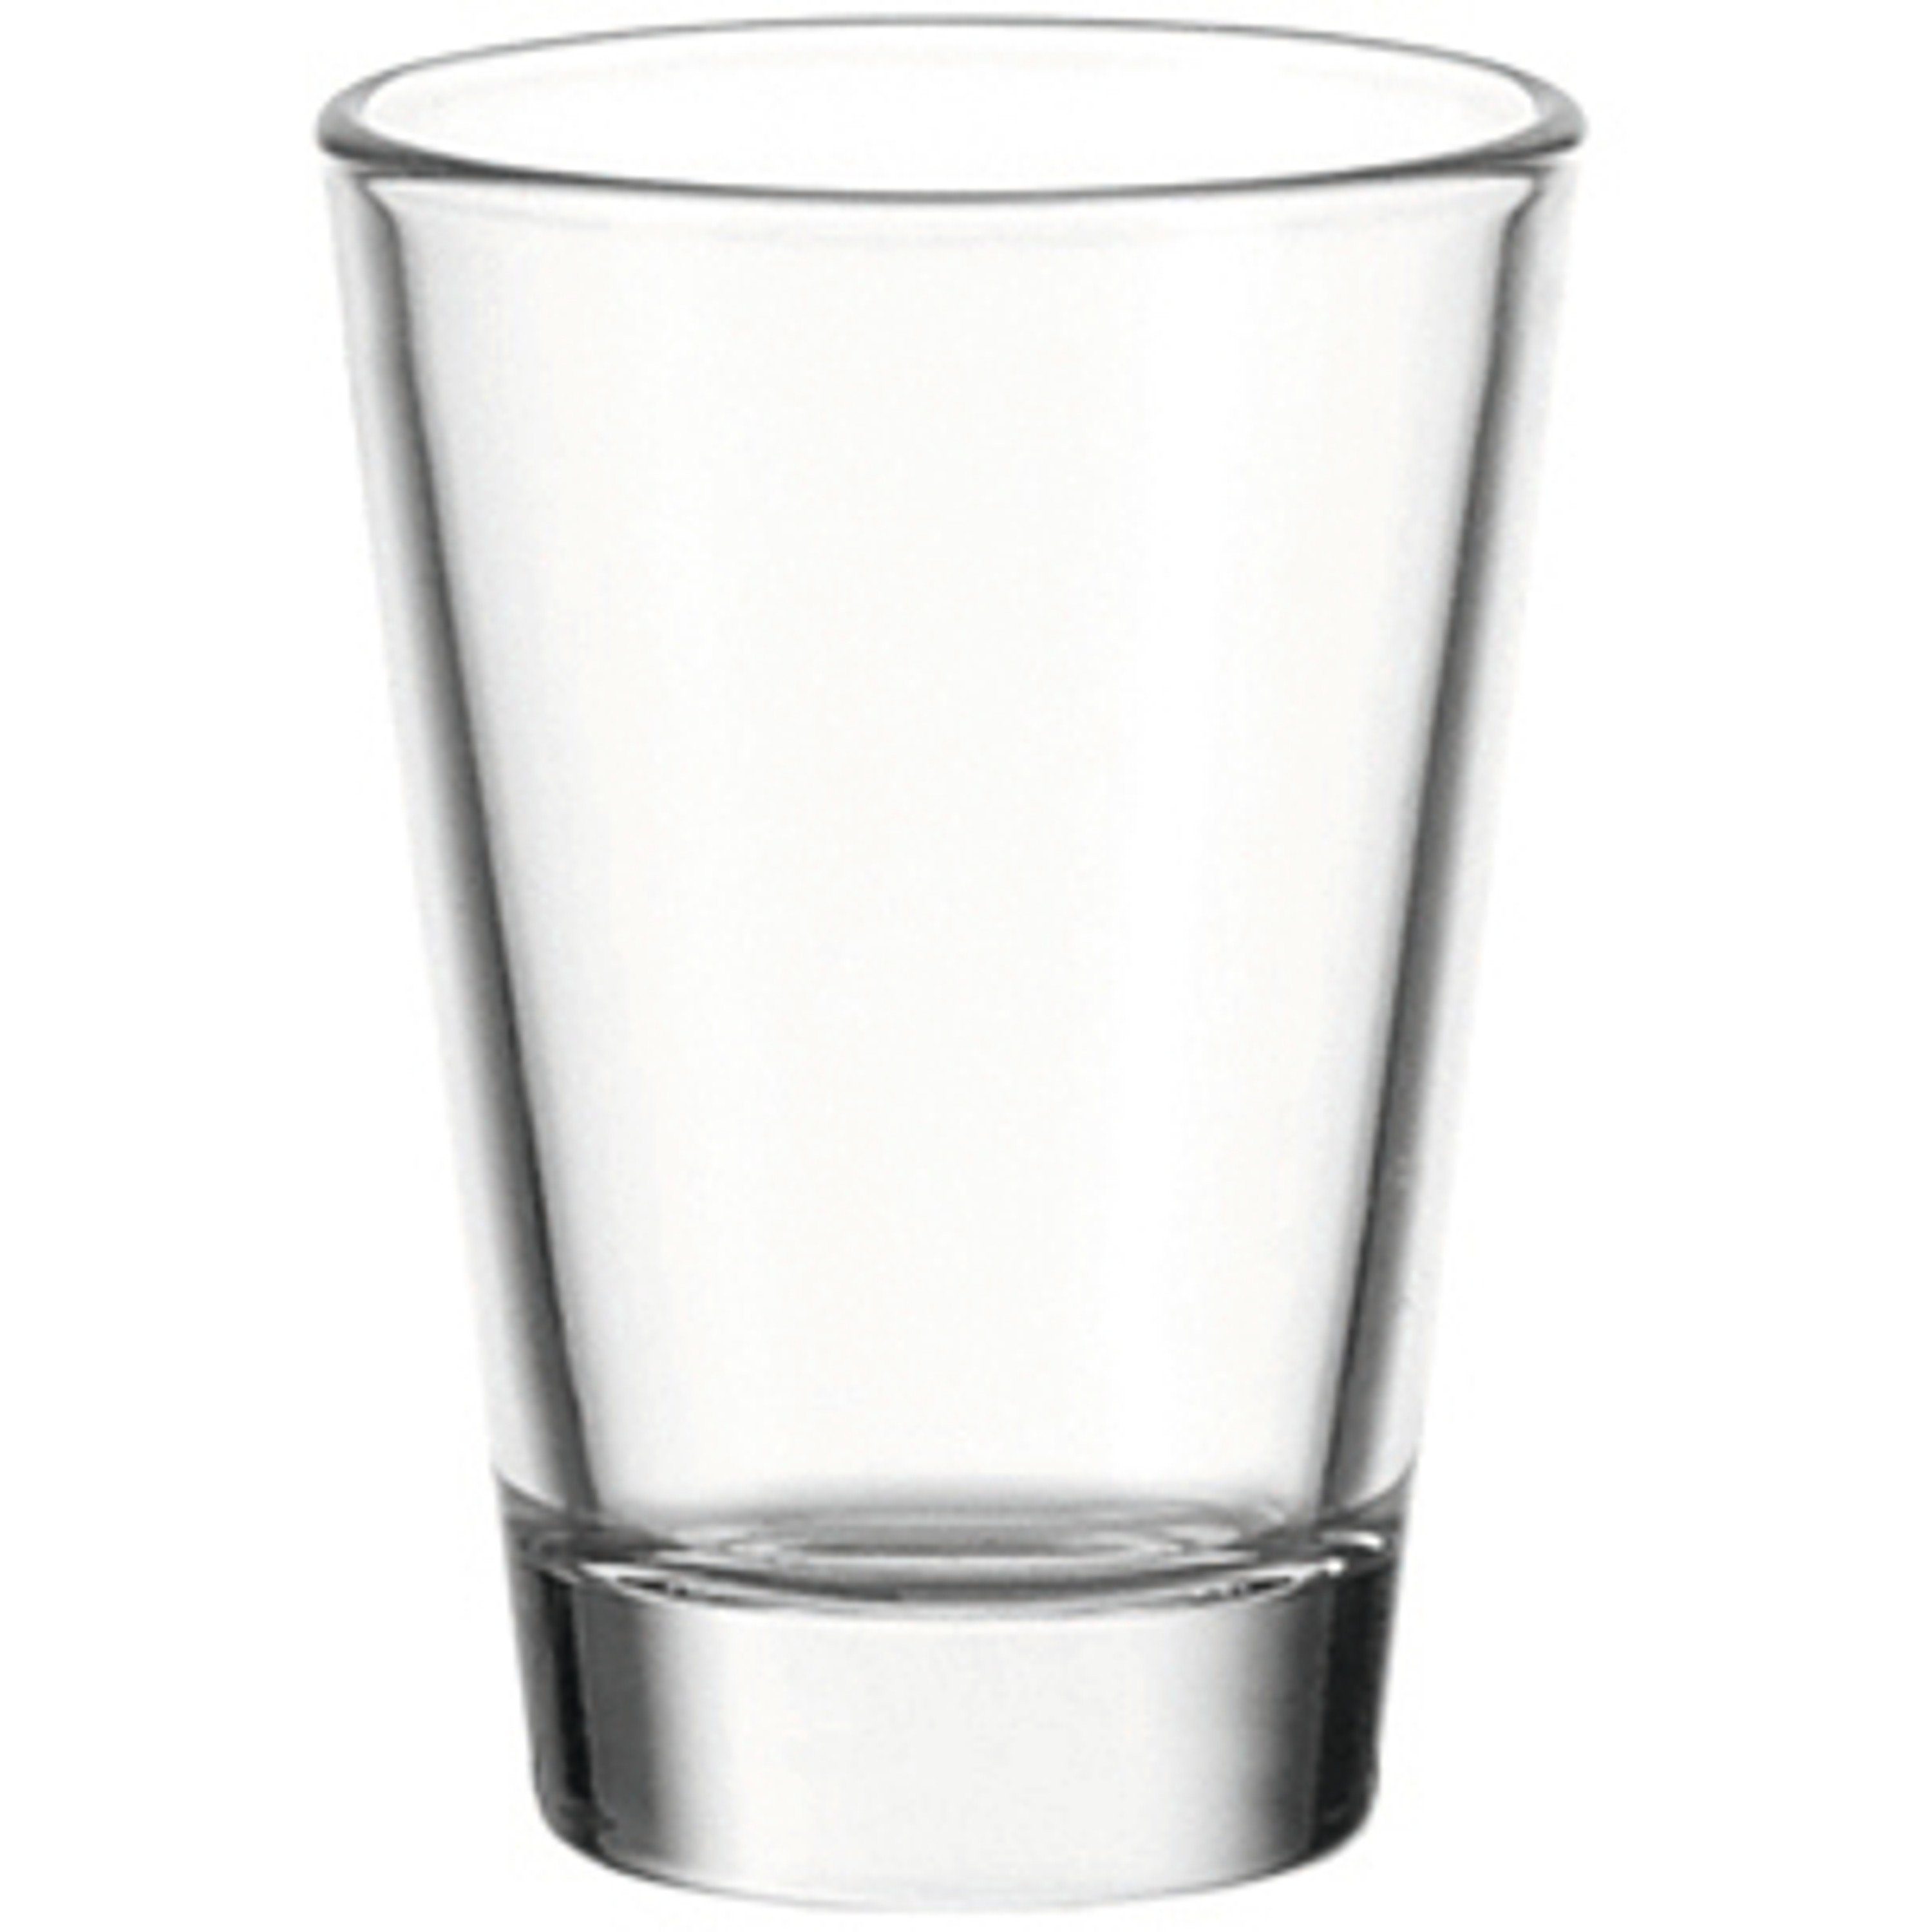 LEONARDO Glas LEONARDO Schnapsglas aus der Serie Ciao, Füllmenge 60 ml., Glas